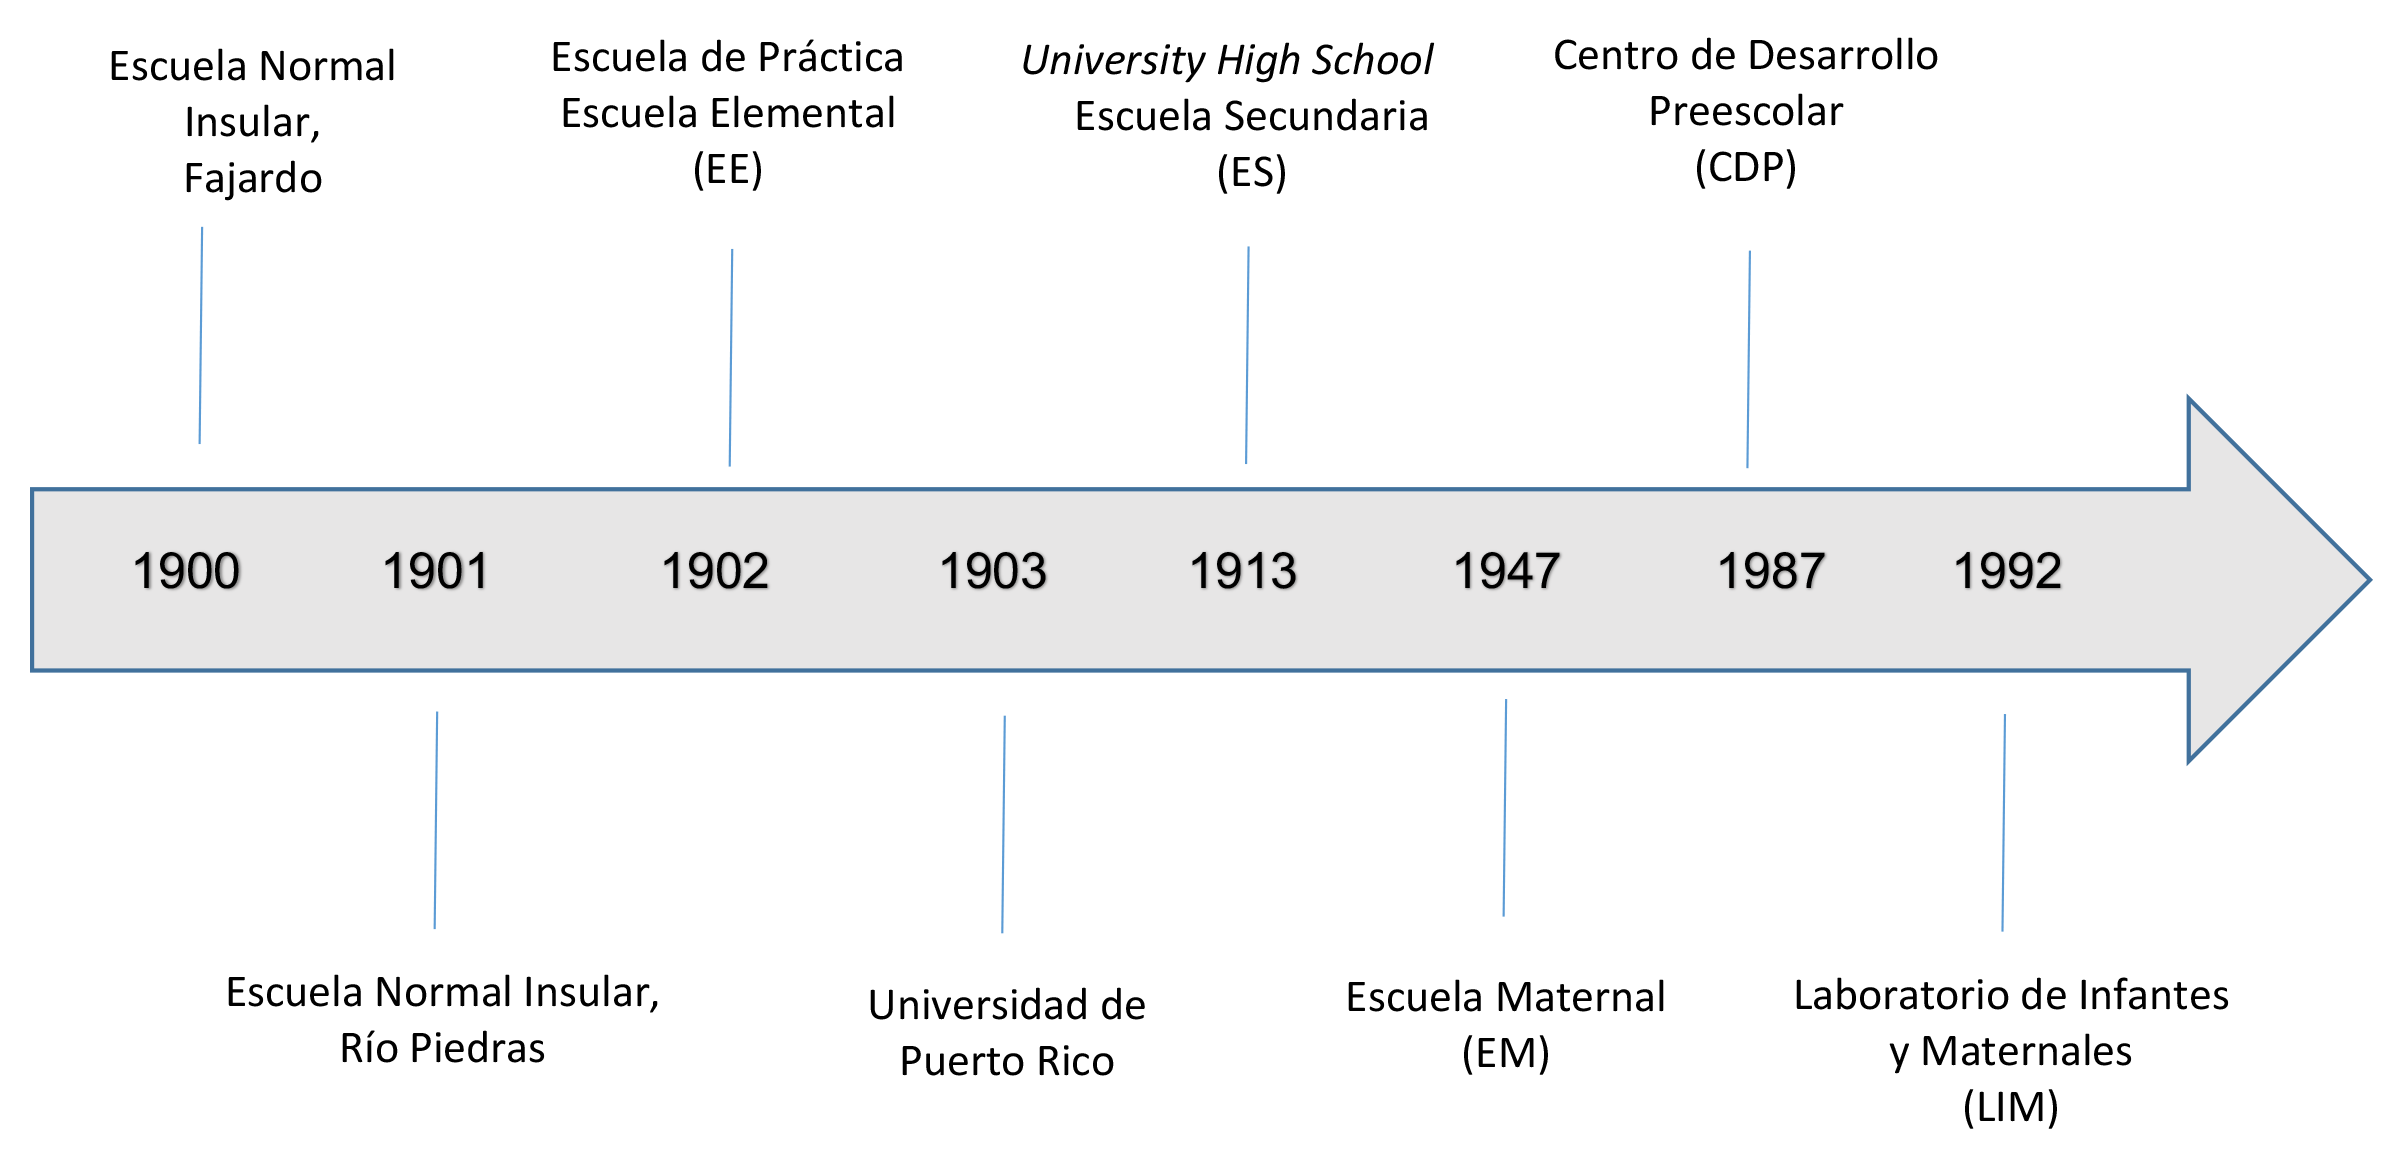 Línea del tiempo de la fundación de la Universidad de Puerto Rico, escuelas y departamentos. Comienza con el año 1900, cuando se funda la Escuela Nornal Insultar en Fajardo, y se extiende hasta 1992, cuando se establece el Laboratorio de Infantes y Maternales, en la UPRRP, según se narra en el artículo.